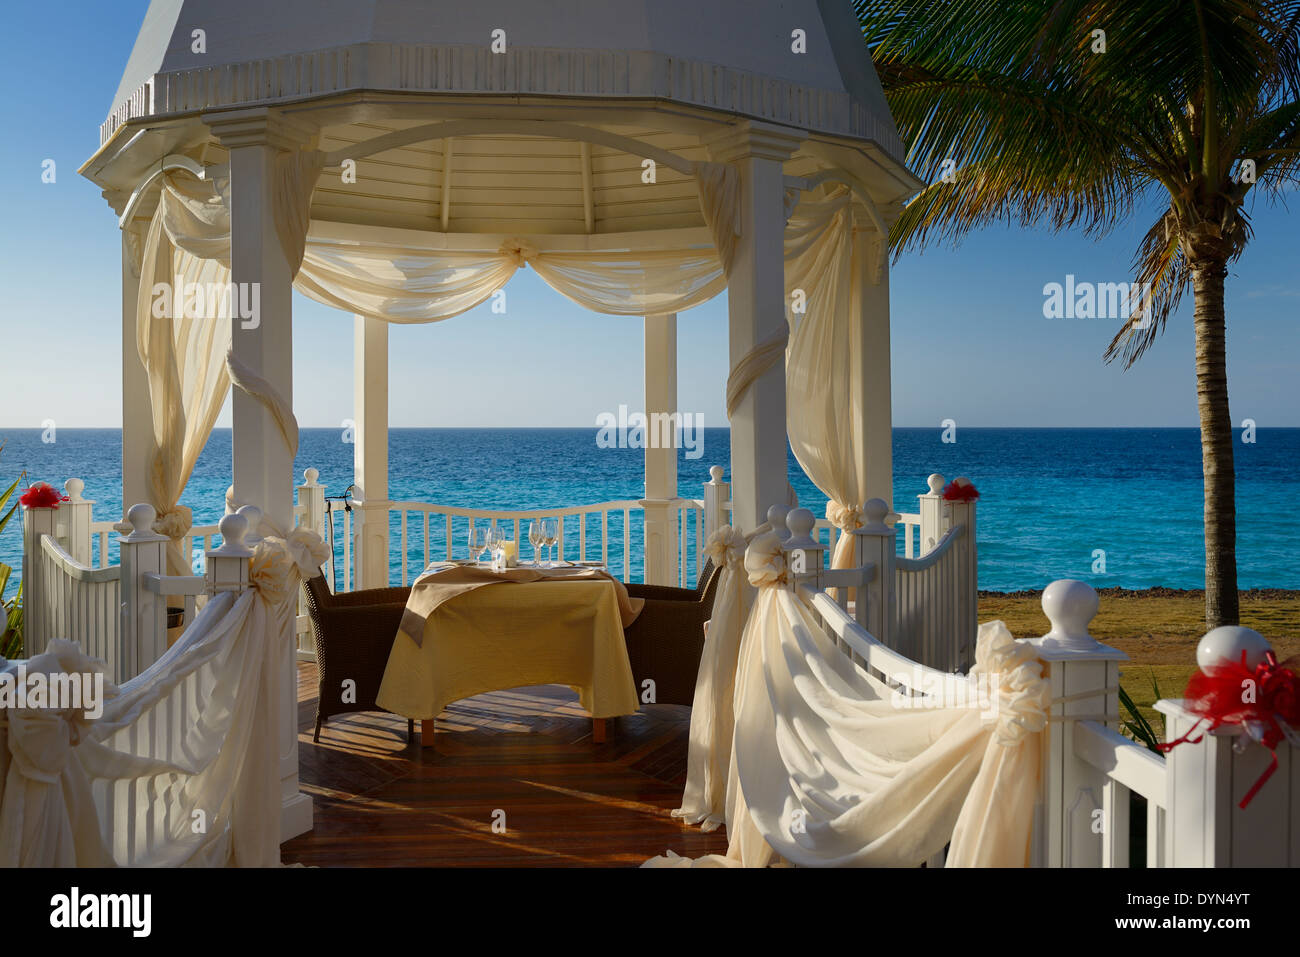 Chapelle de Mariage avec set de table pour les mariés à une Cuba Varadero beach resort par la baie de Cardenas océan Atlantique Banque D'Images